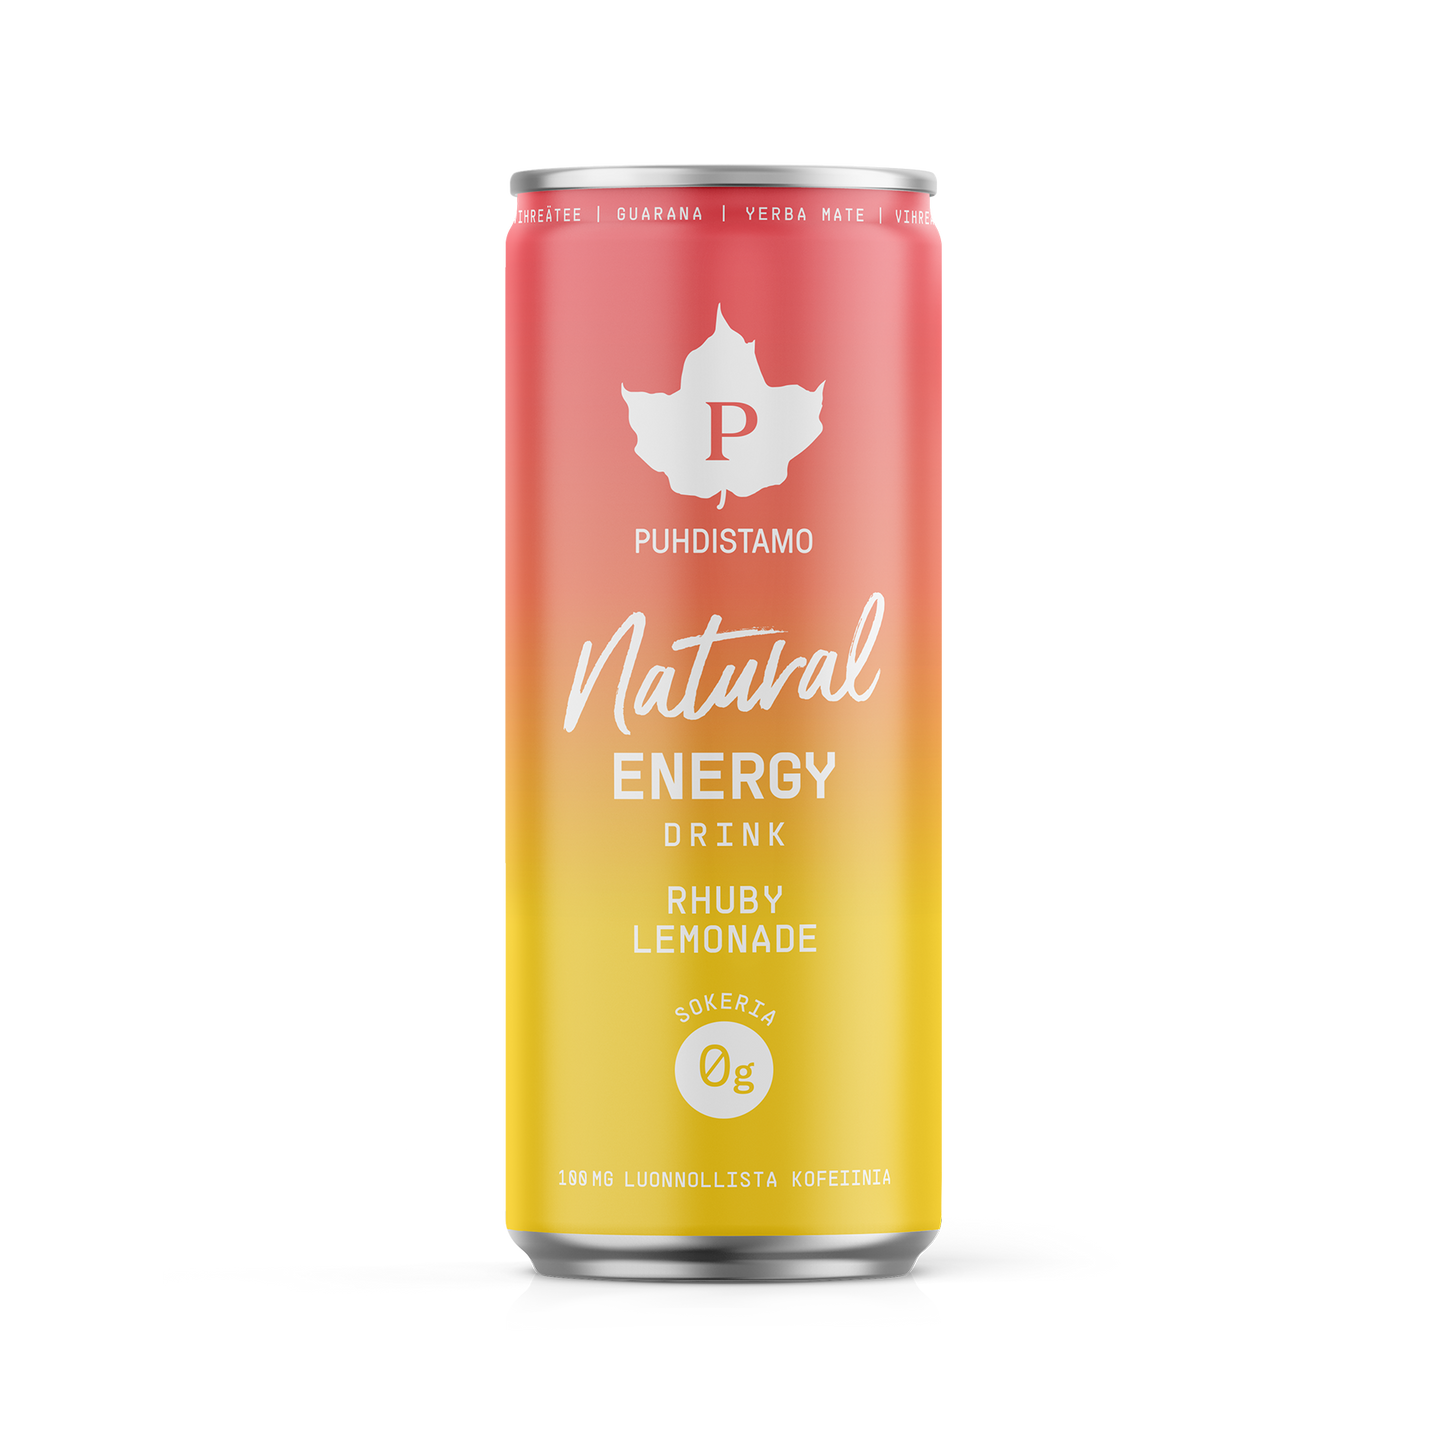 Natural energy drink Rhuby Lemonade 330 ml